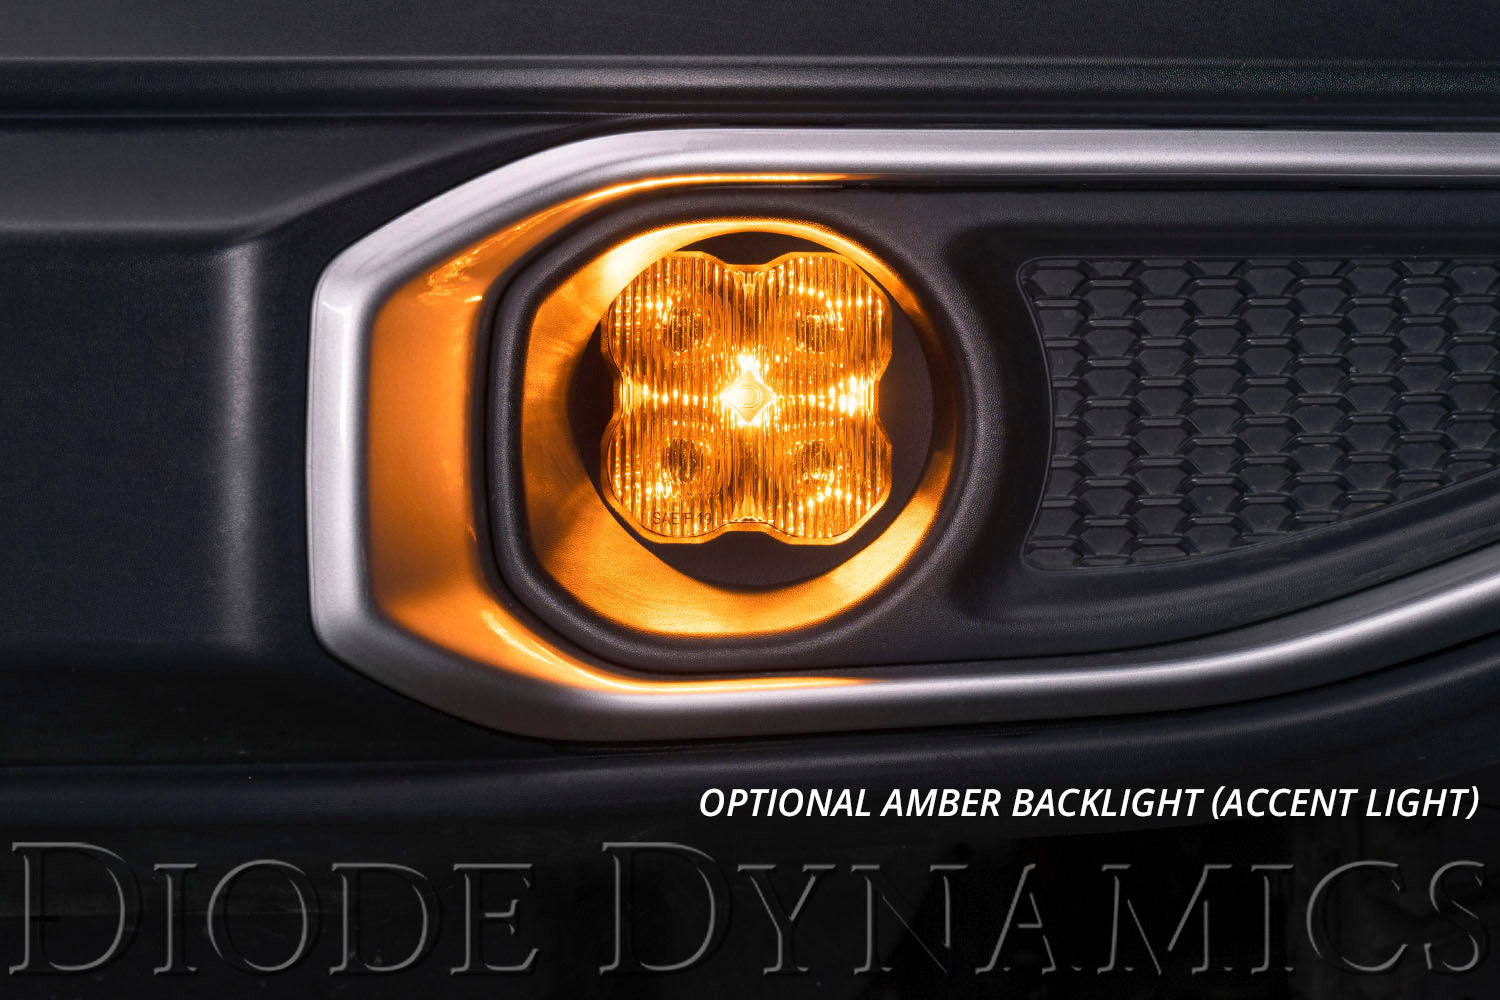 SS3 LED Fog Light Kit for 2007-2018 Jeep JK Wrangler Yellow SAE Fog Sport Diode Dynamics